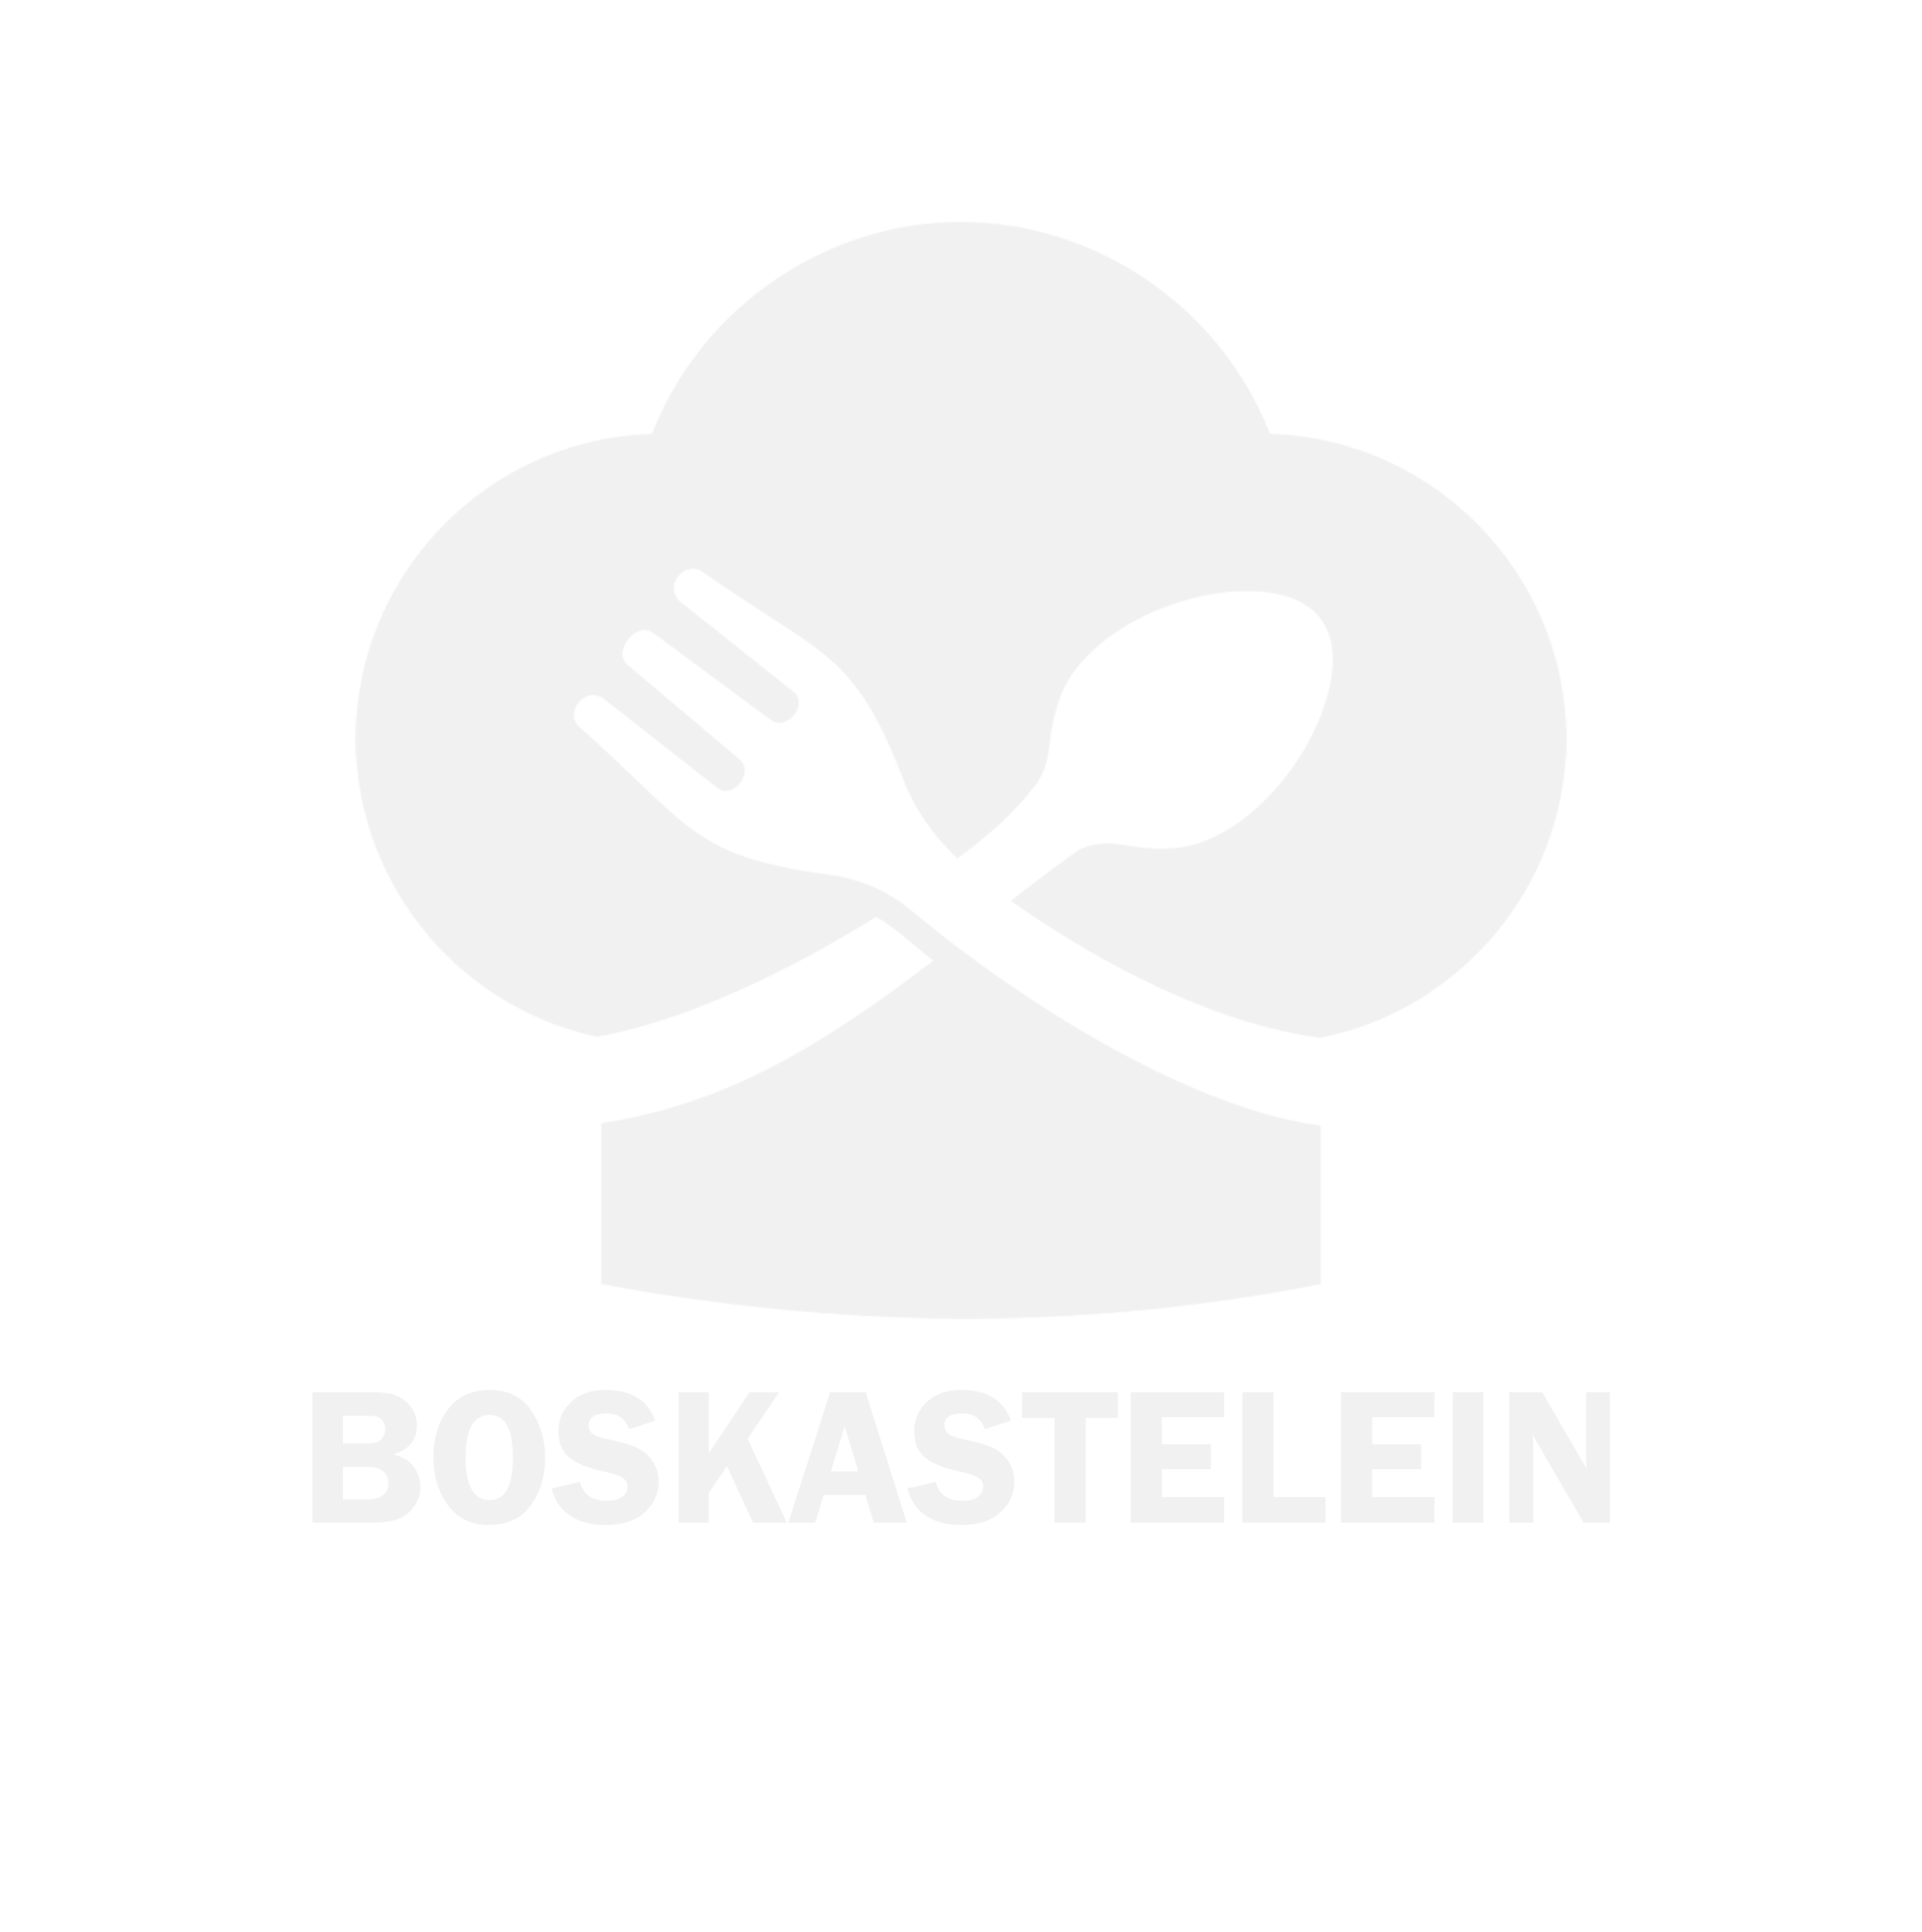 boskastelein logo